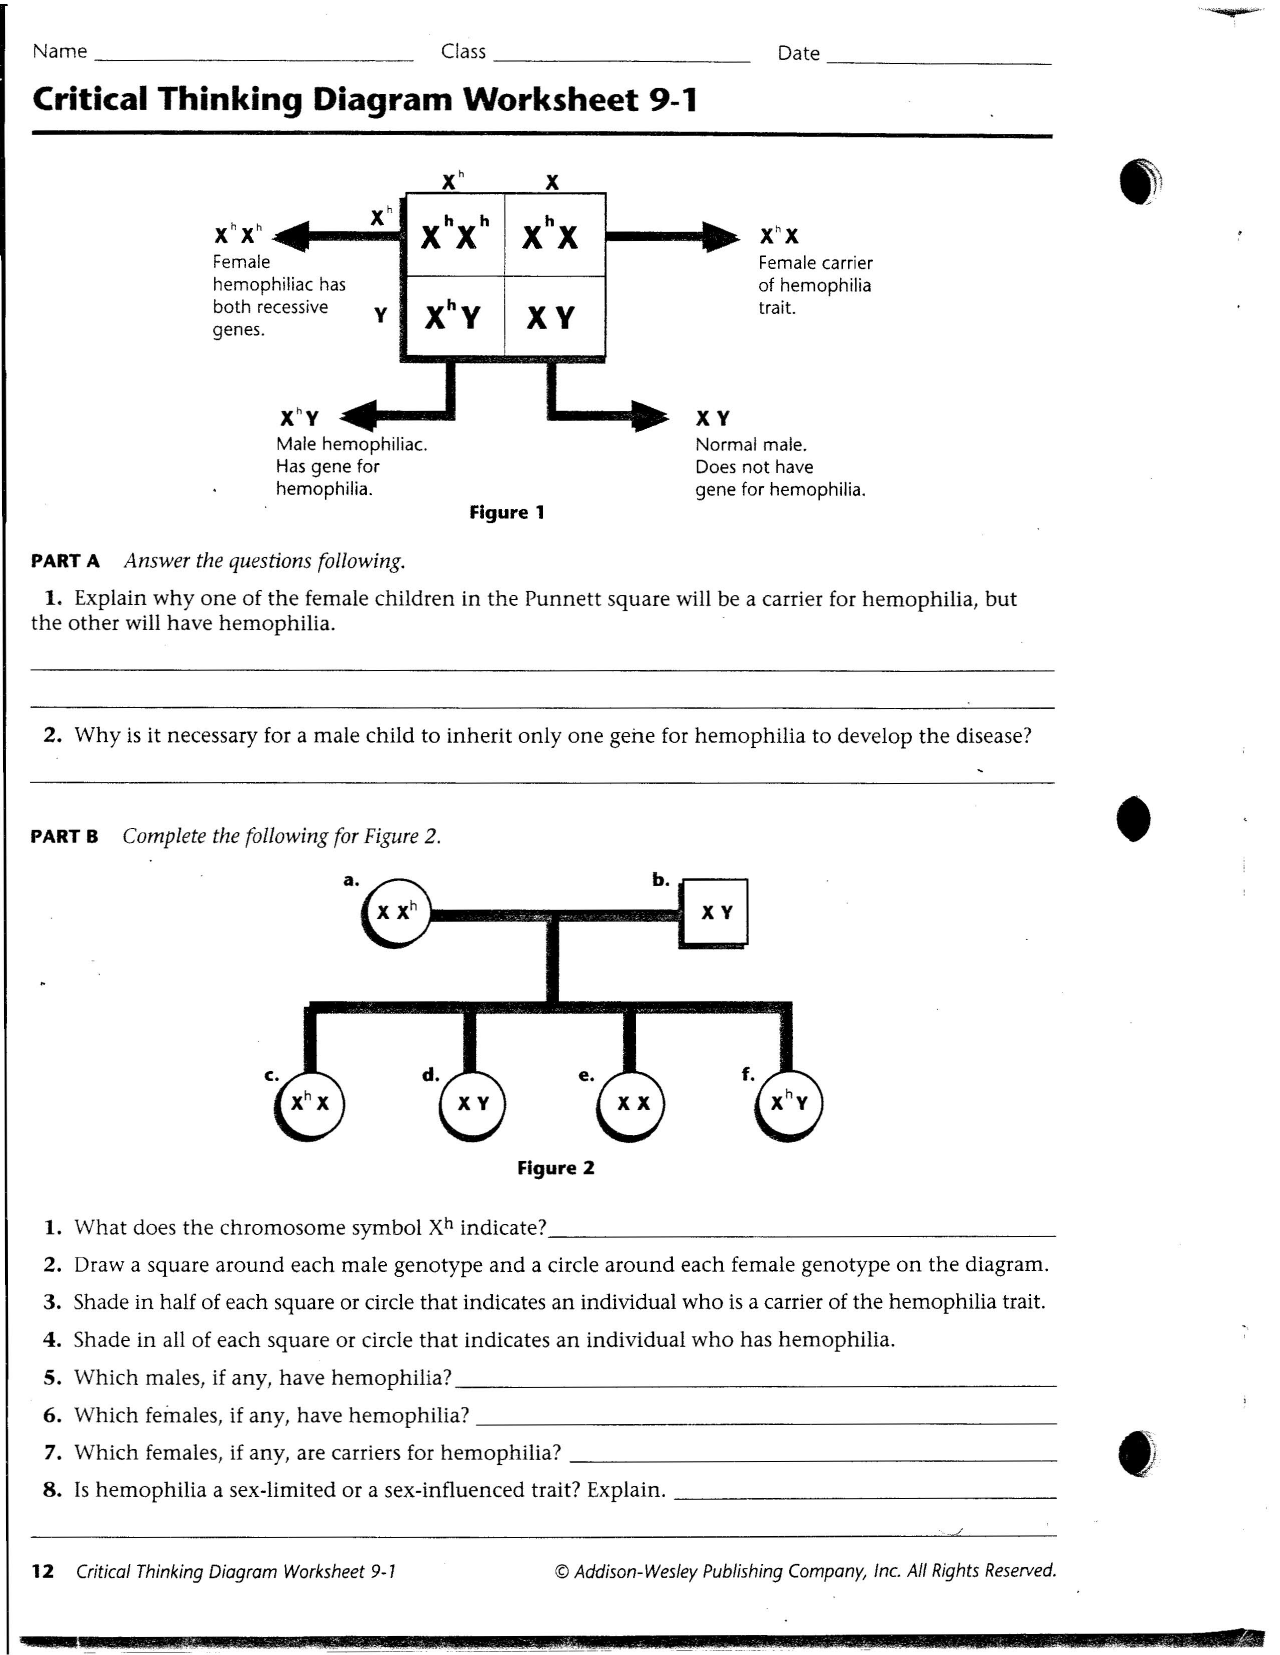 critical thinking worksheet answer key